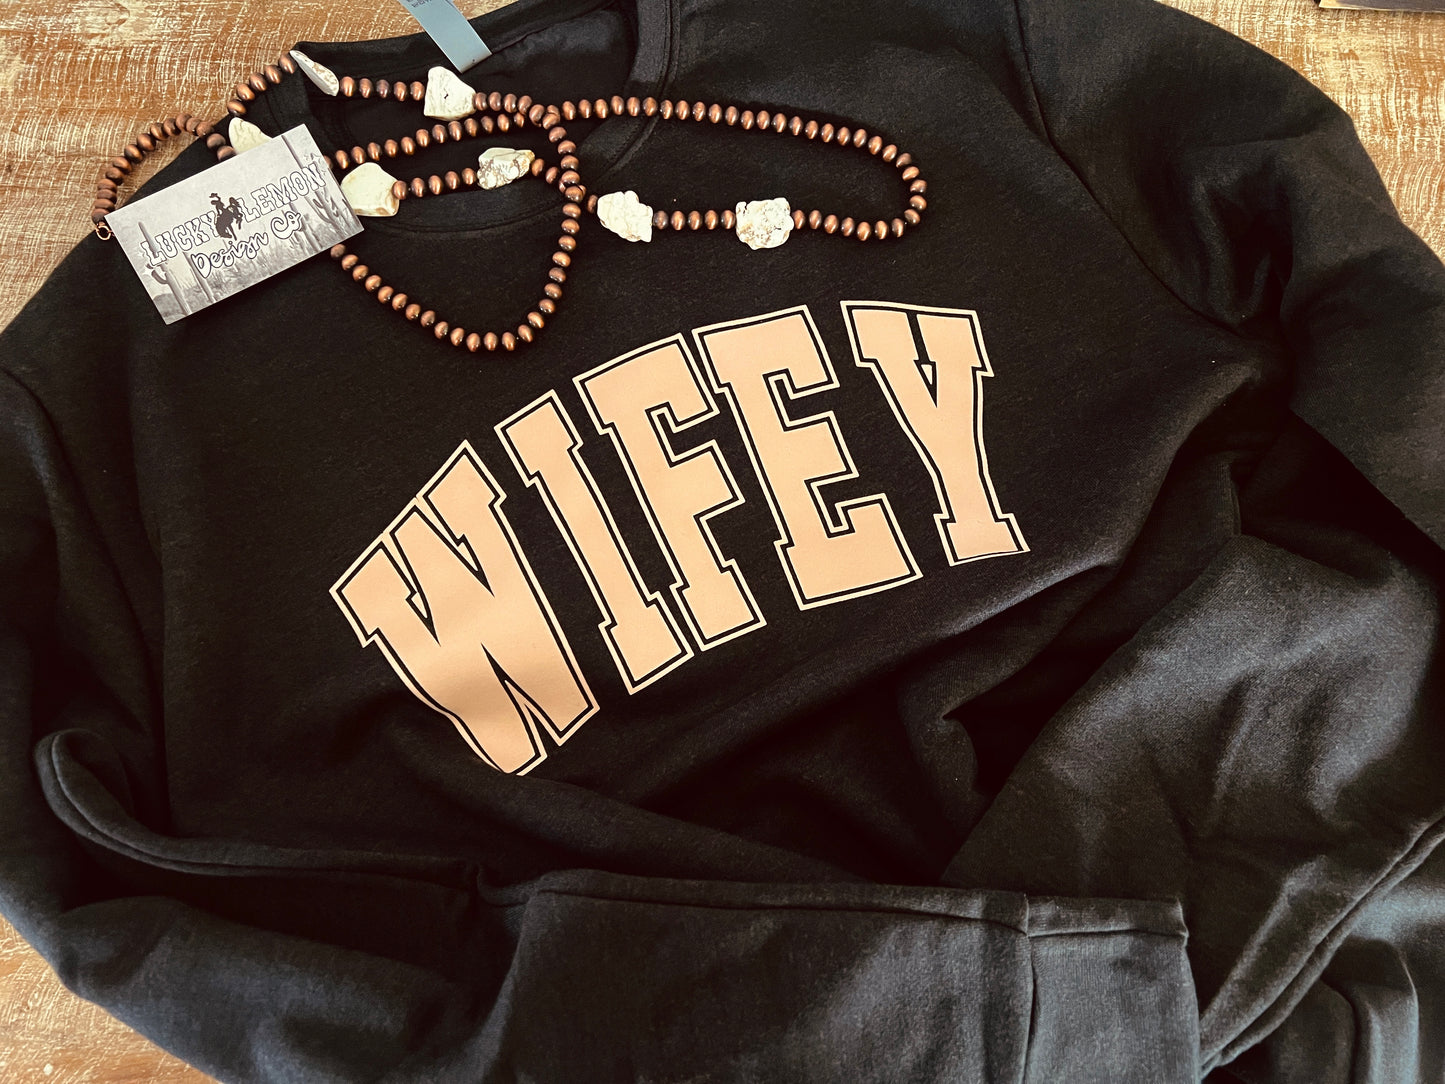 Wifey crew sweatshirt